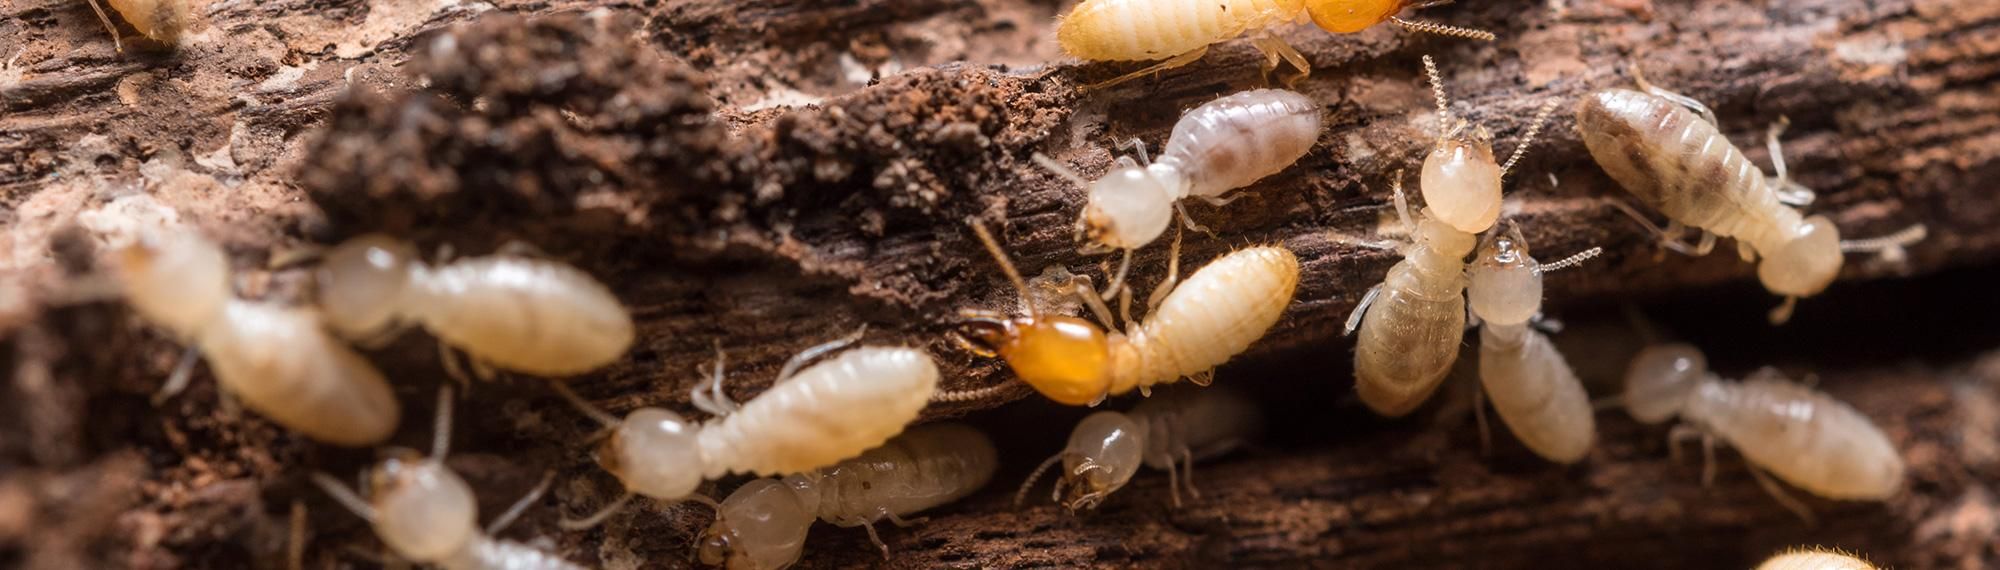 termite workers in virginia